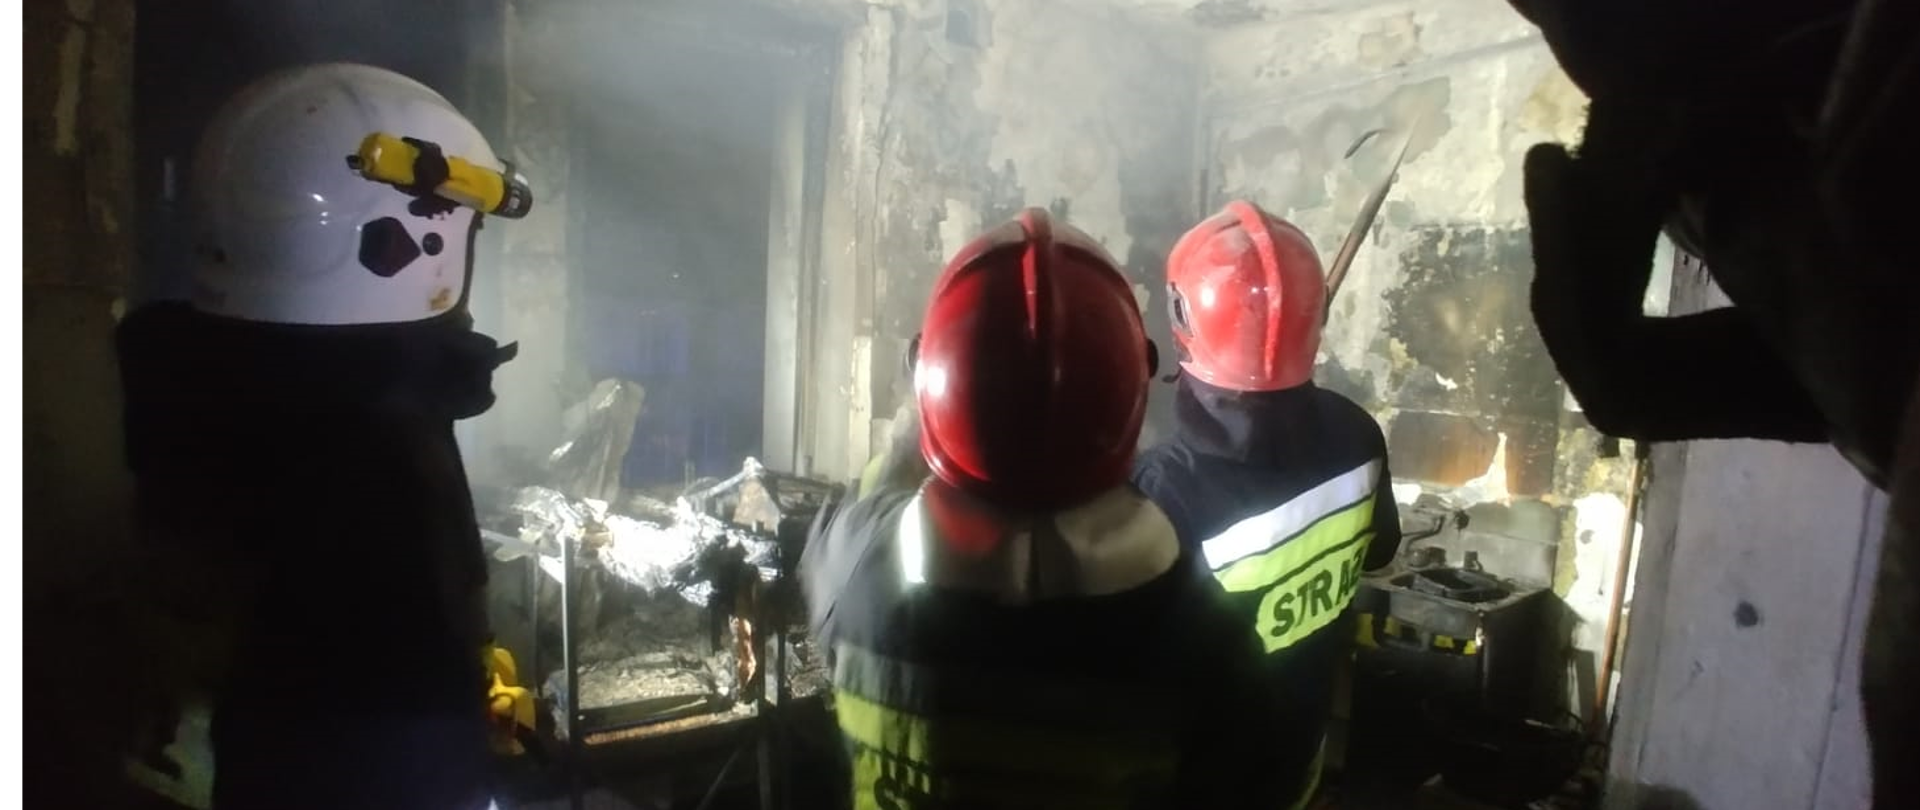 Pomieszczenie zniszczone w wyniku pożaru. W pomieszczeniu trzech strażaków w umundurowaniu wyjściowym.